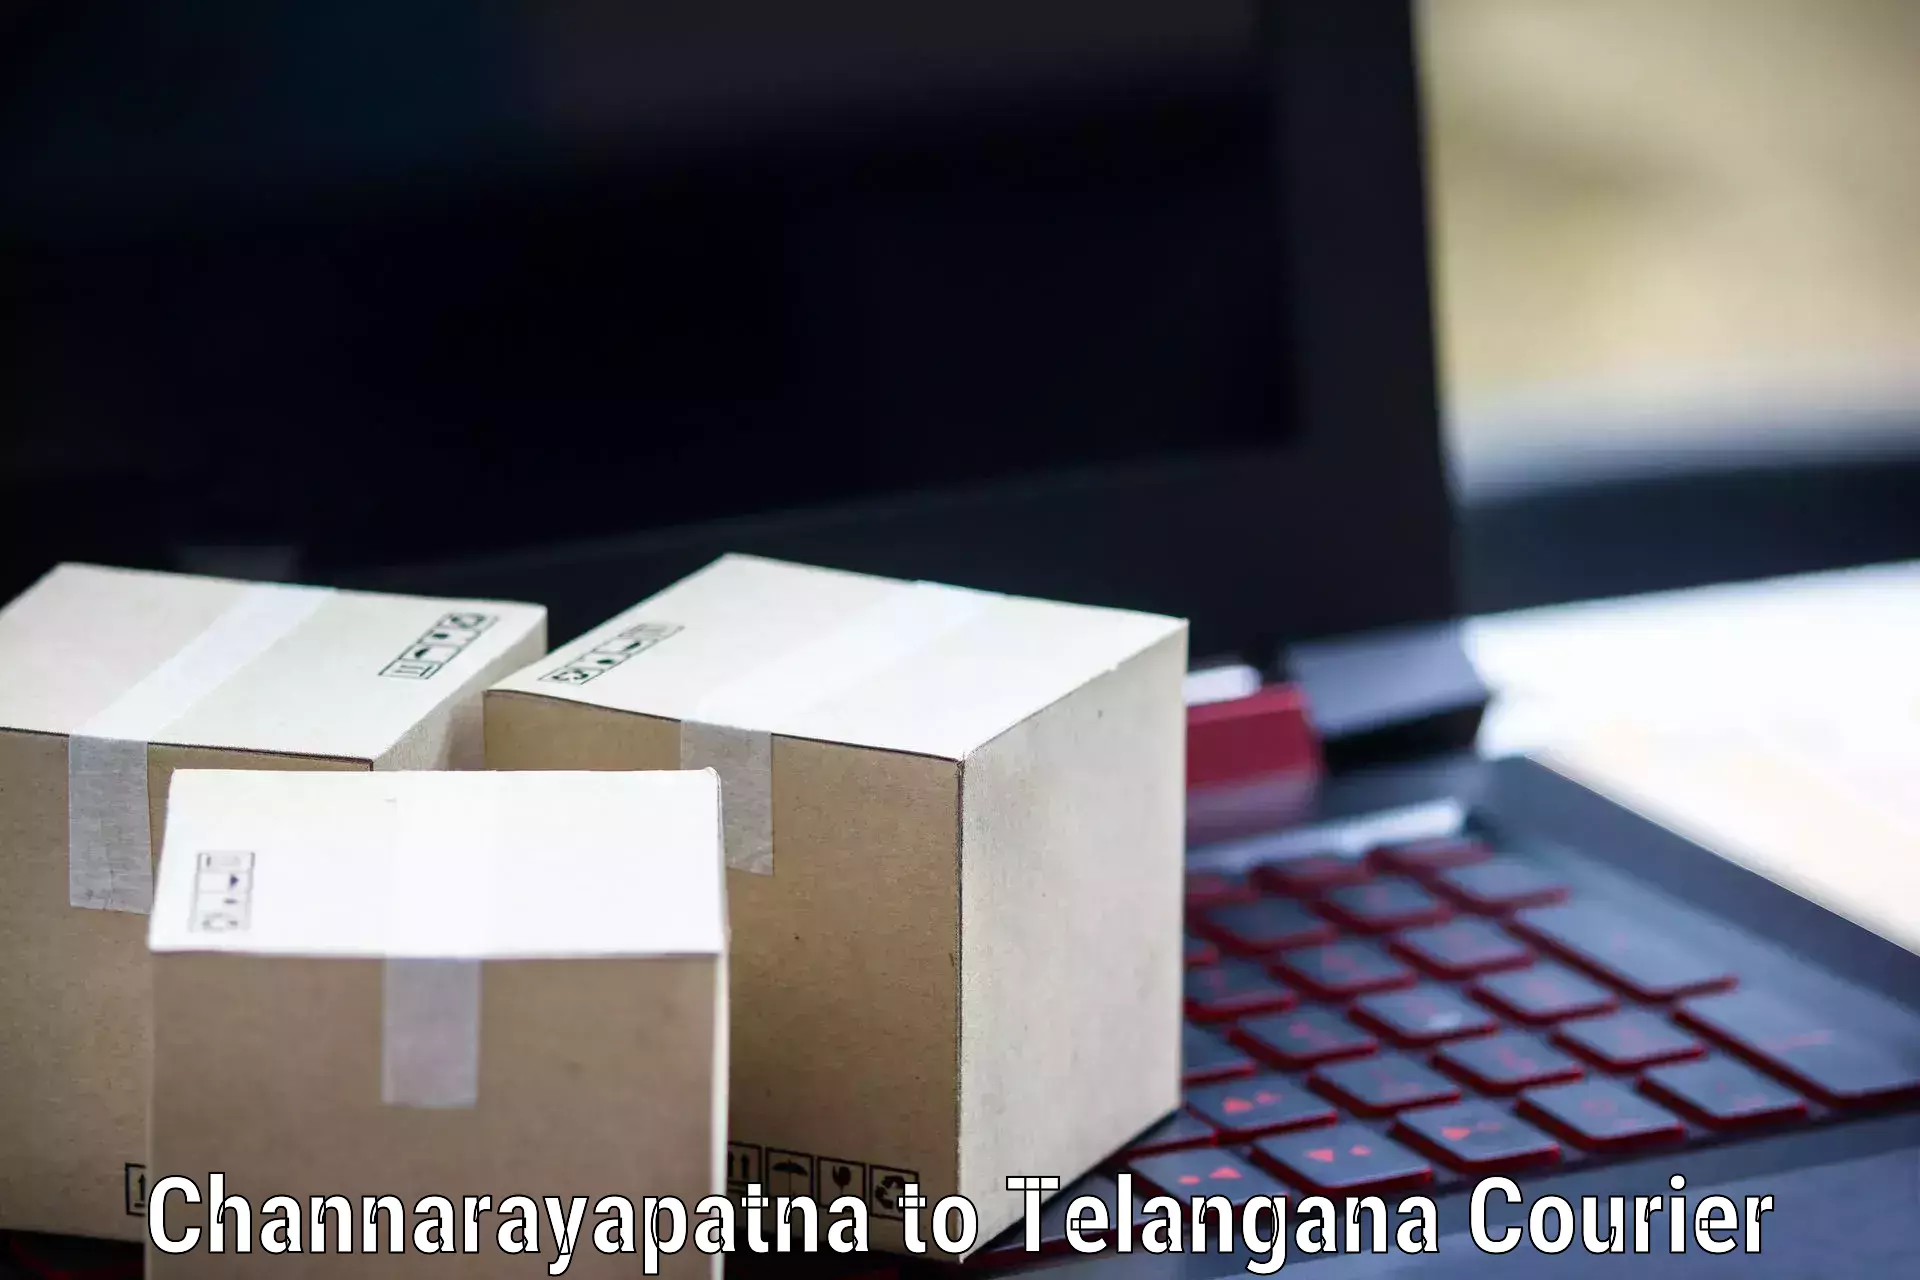 Professional courier handling Channarayapatna to Mahabubabad